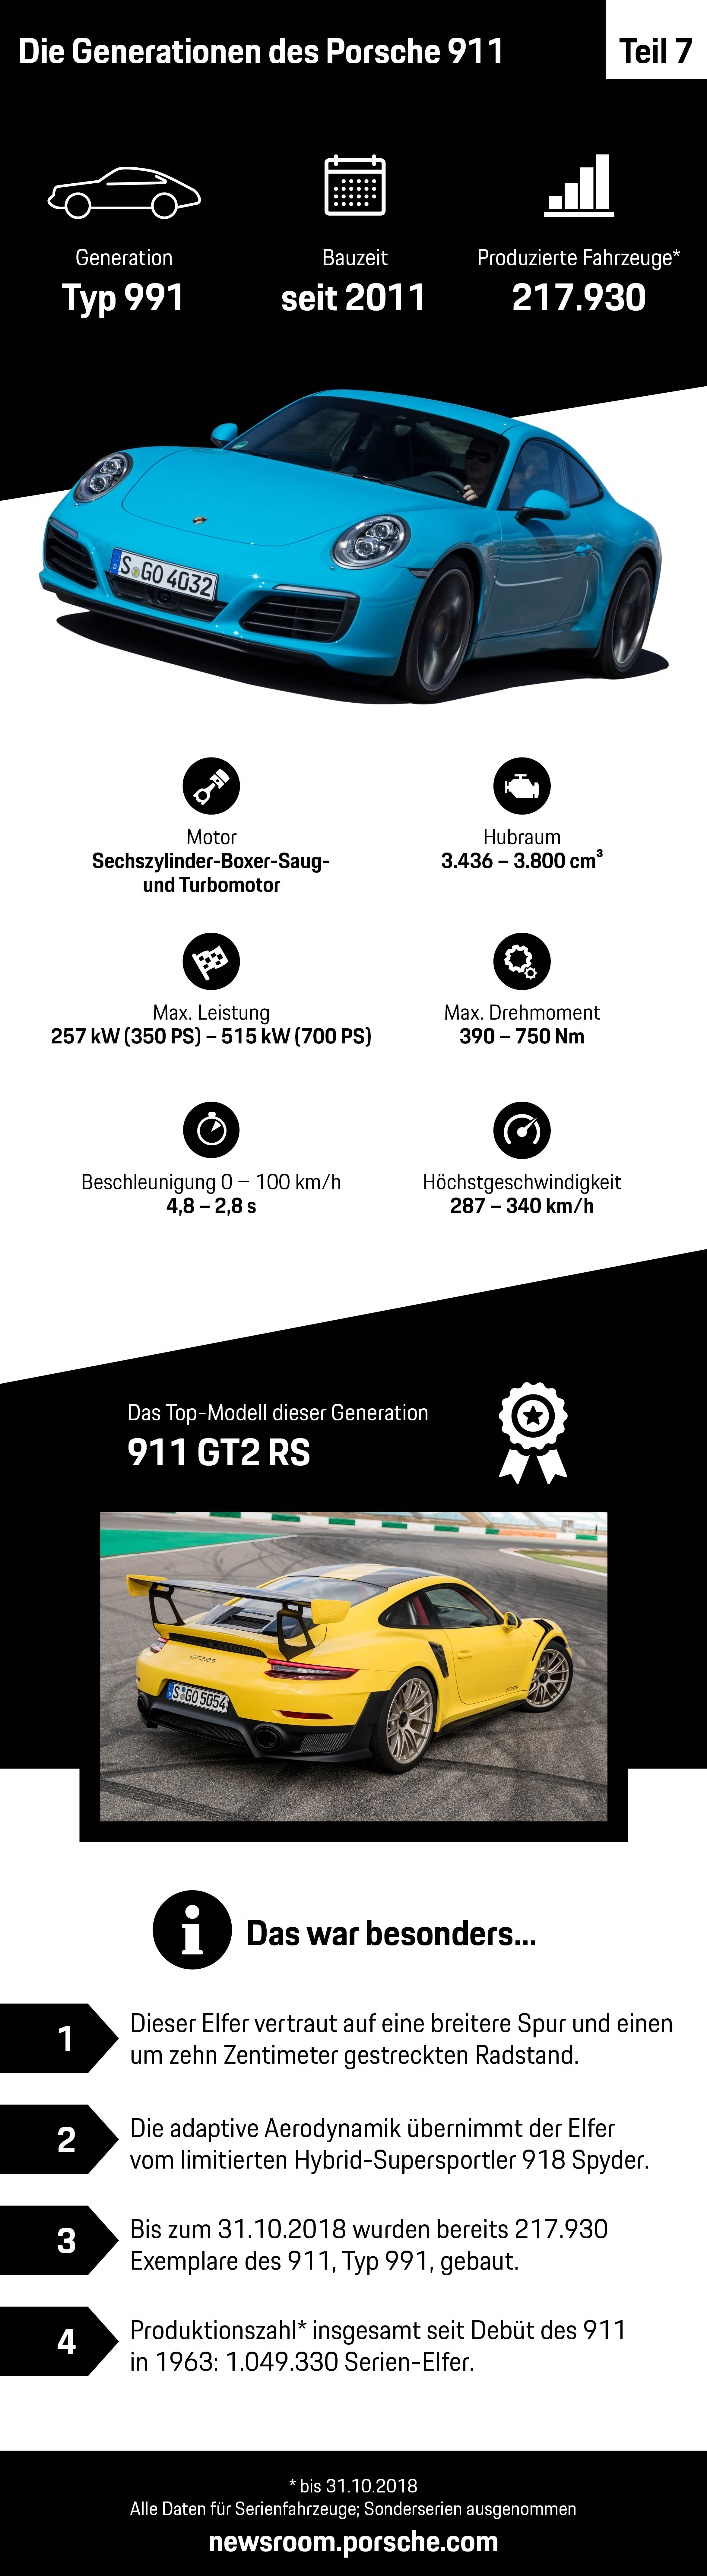 Die Generationen des Porsche 911 – Teil 7, Infografik, 2018, Porsche AG